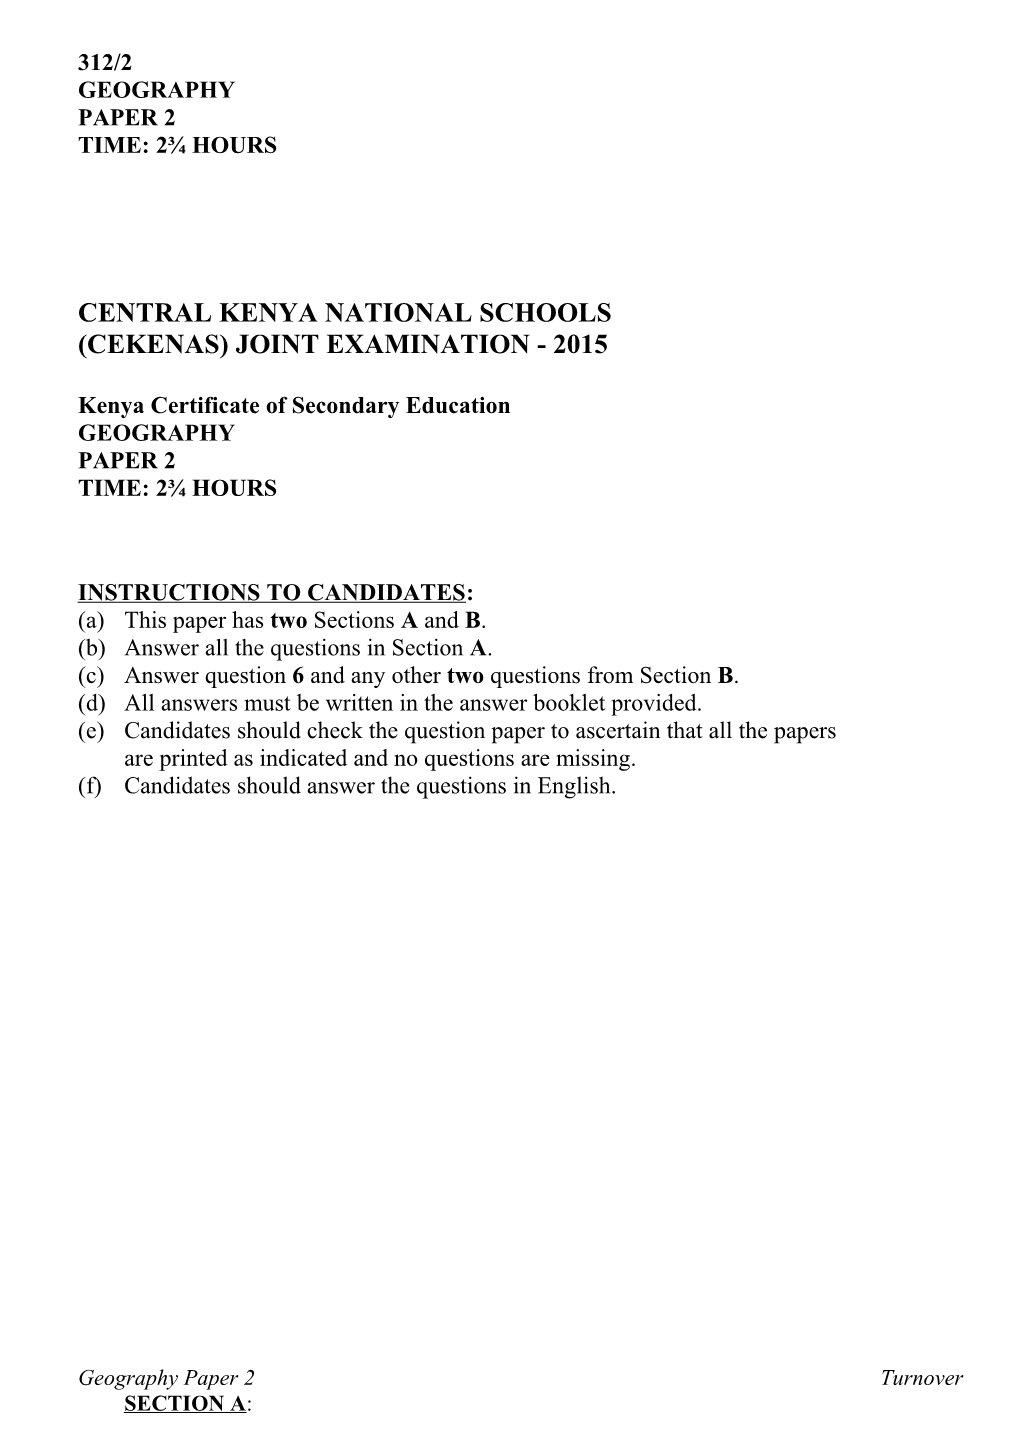 Central Kenya National Schools